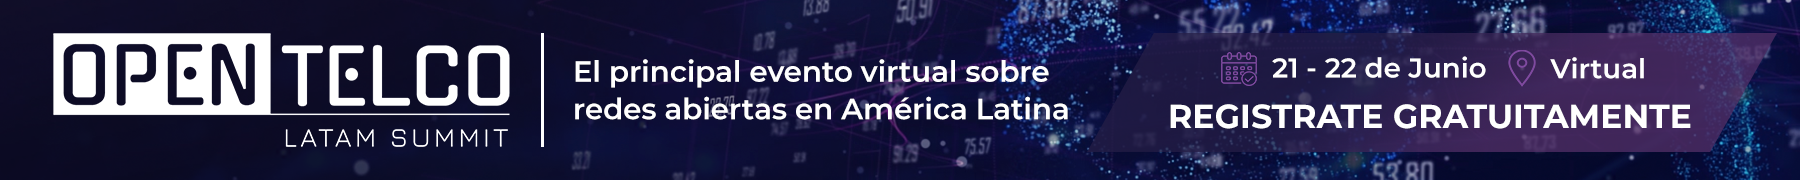 Open Telco LATAM SUMMIT - El principal evento virtual sobre redes abiertas en América Latina